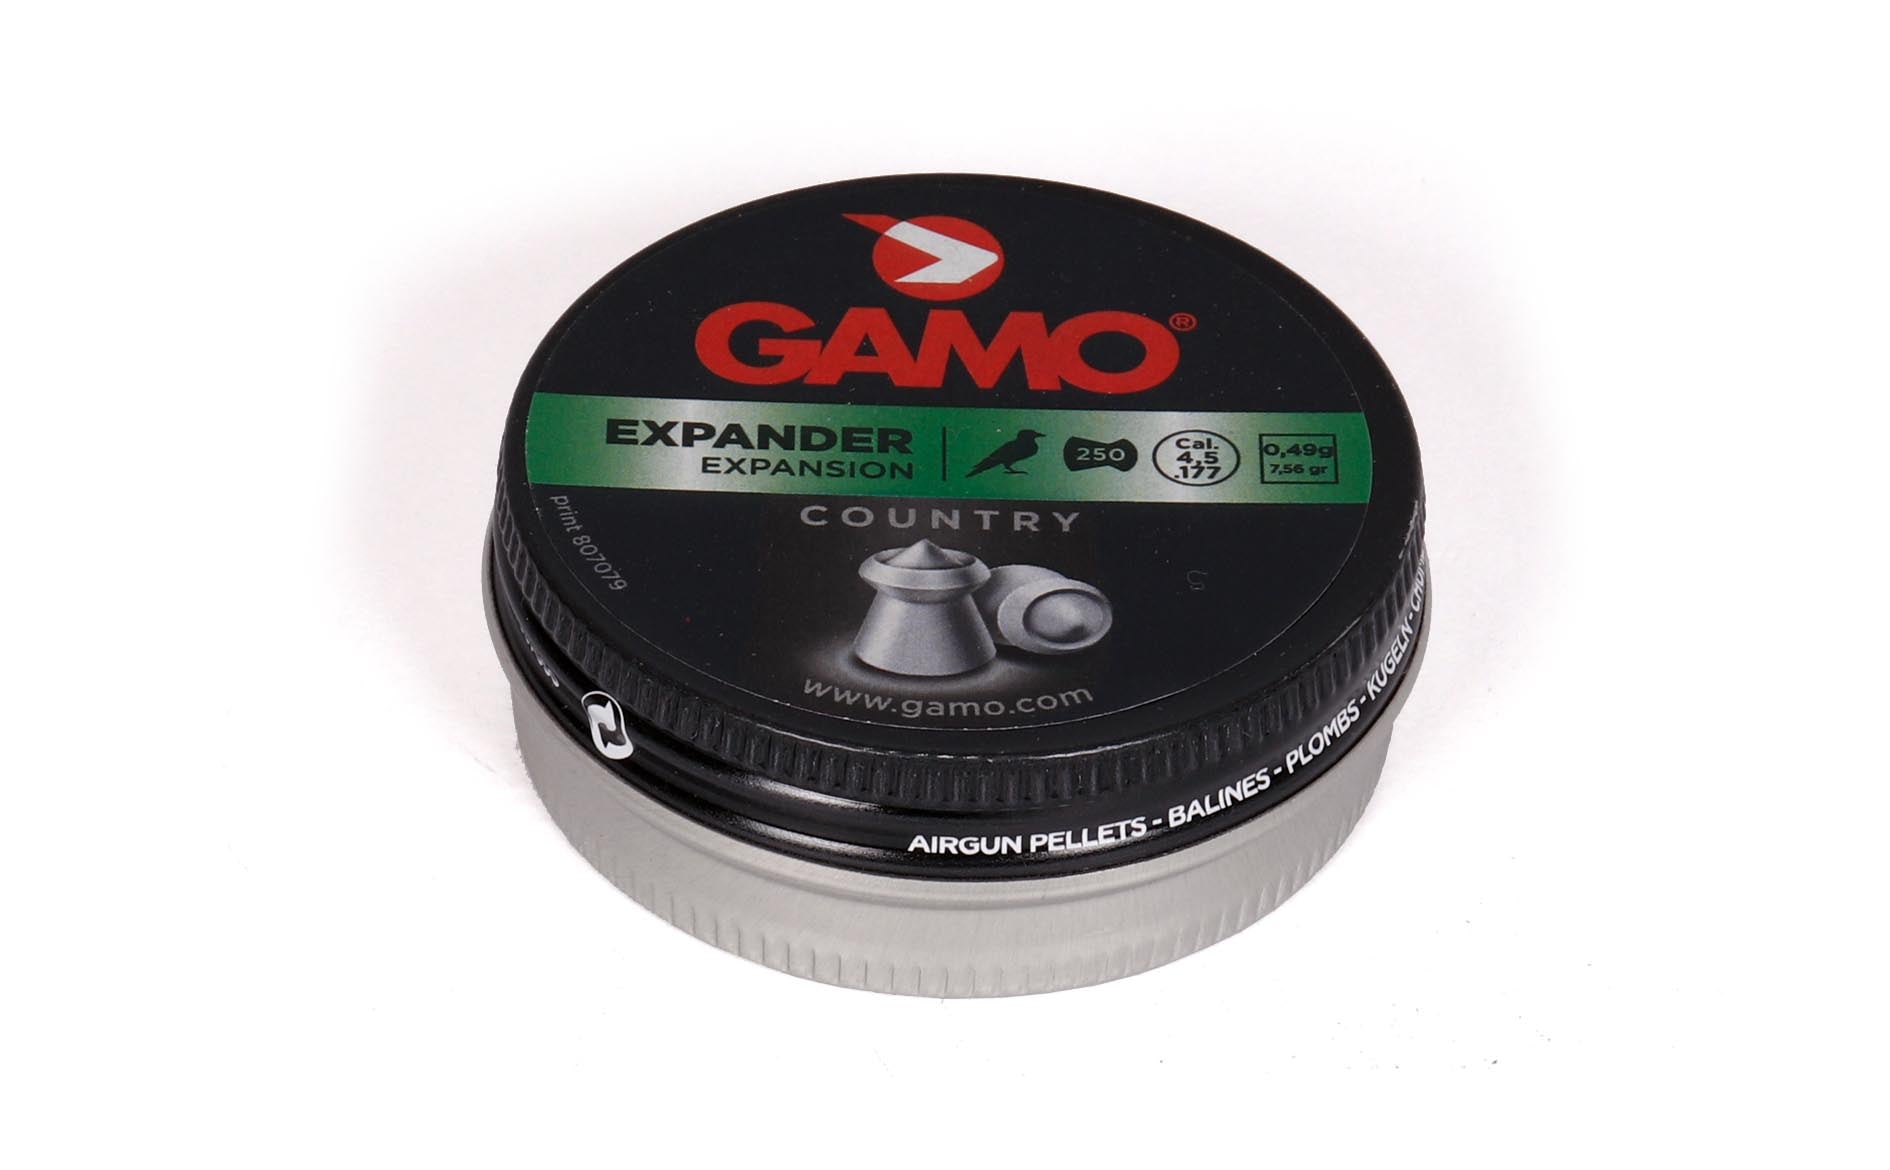 Gamo Expander 0.177cal | Gamo Expander Hollow Pointer | Cynosure